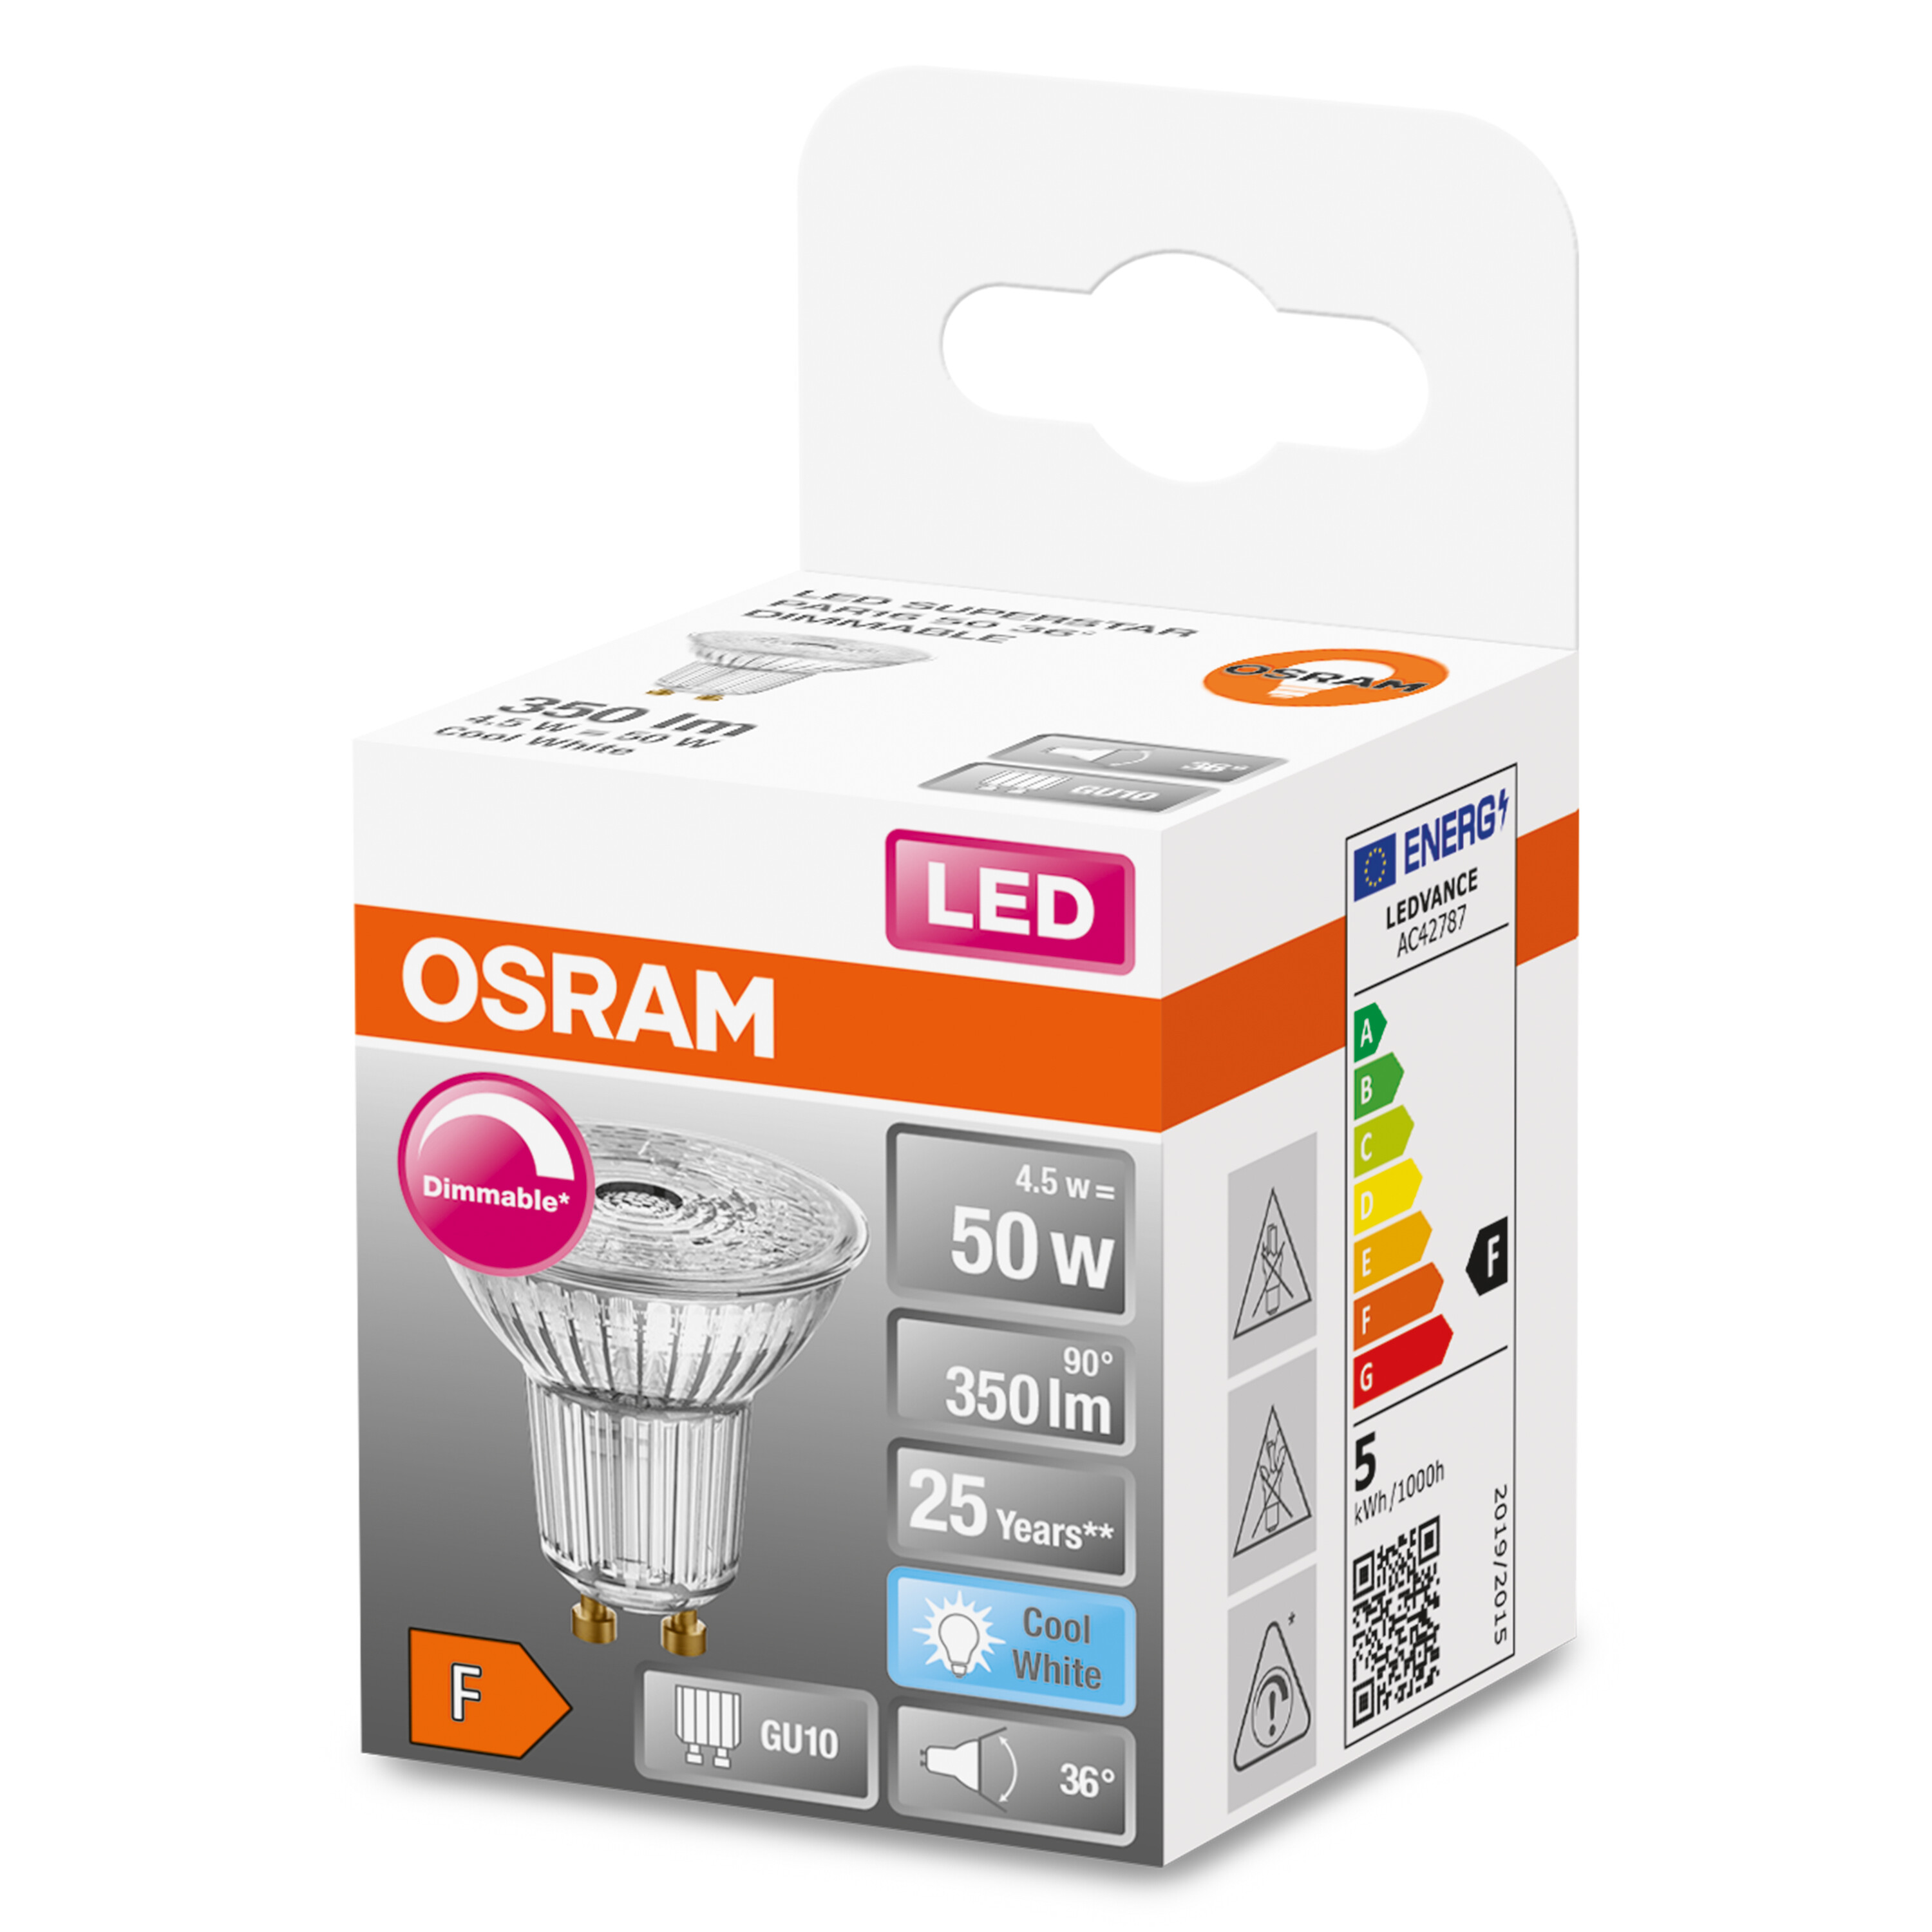 OSRAM  LED SUPERSTAR PAR16 LED 350 Lampe Kaltweiß Lumen